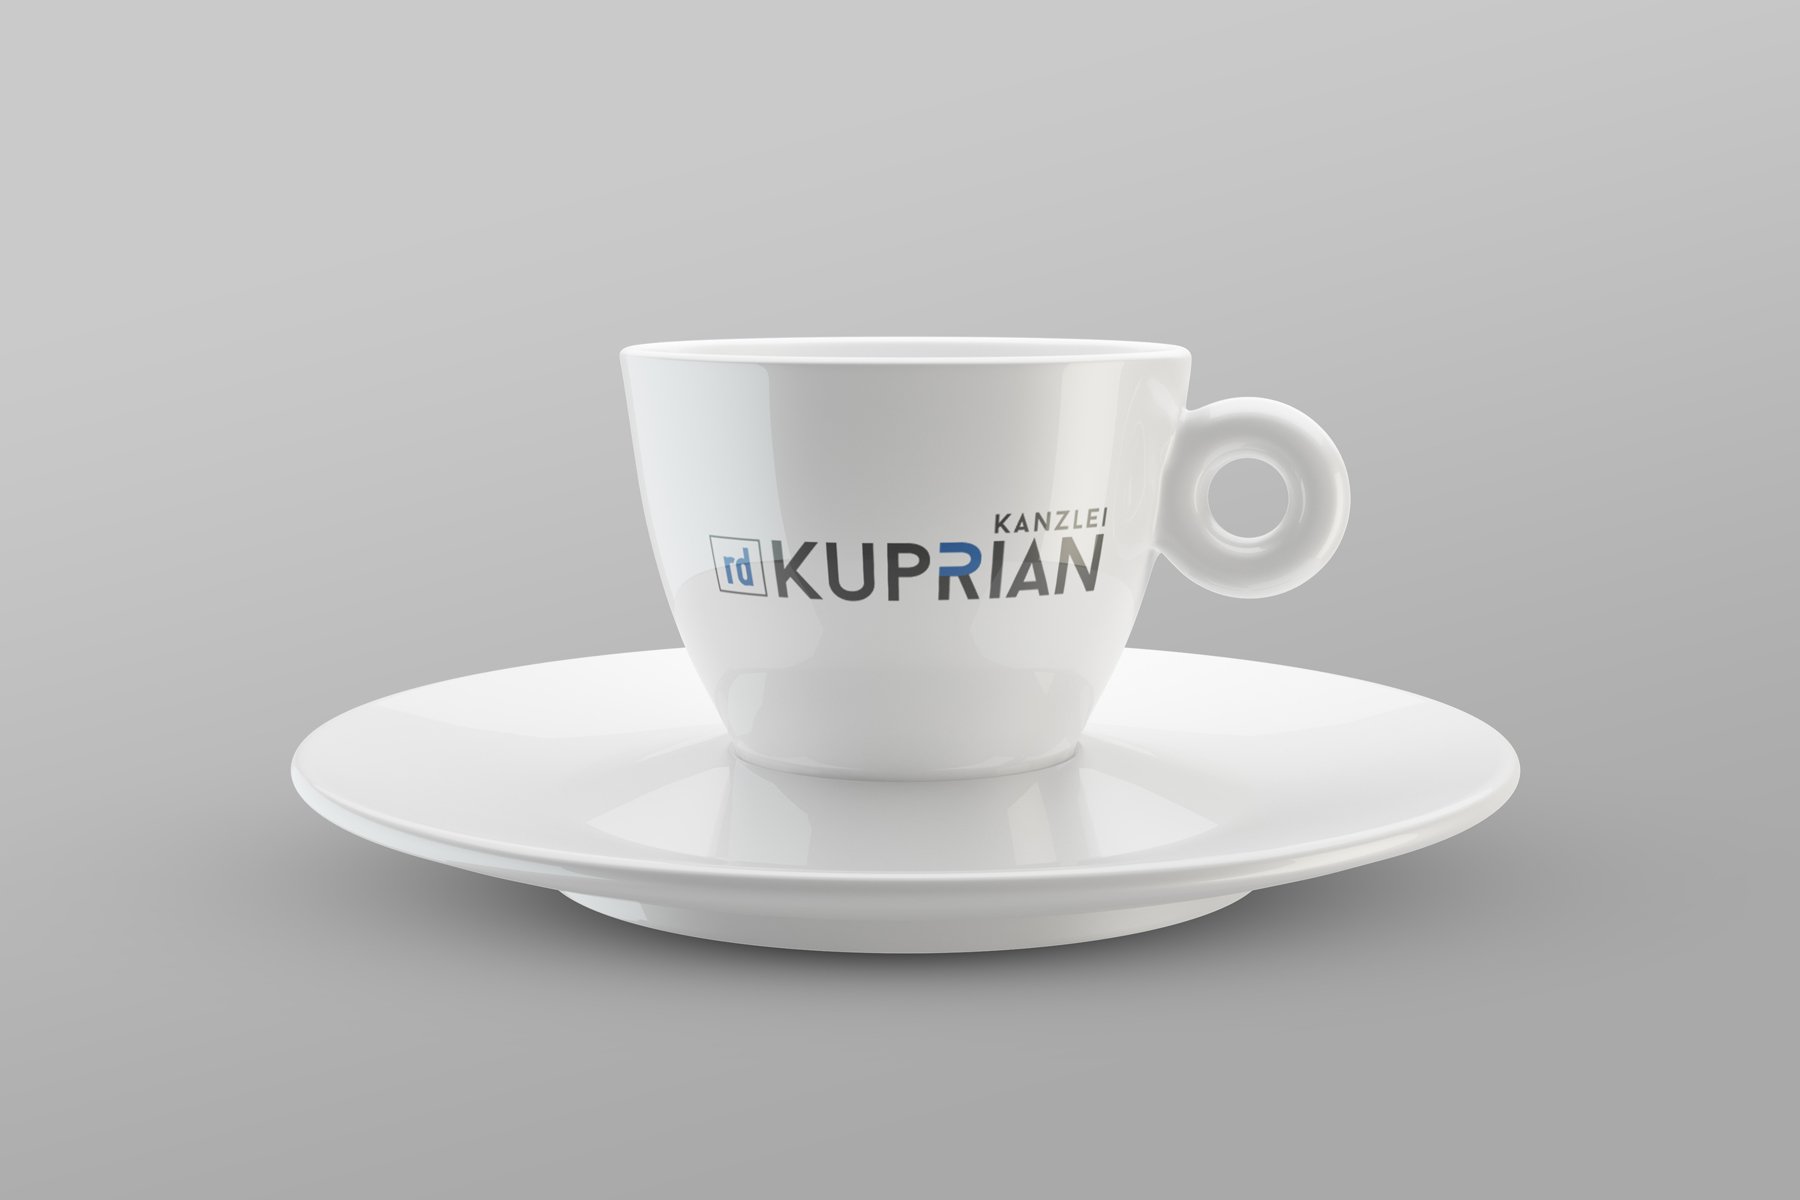 Produkt Branding | Kaffeetasse - KANZLEI rd KUPRIAN